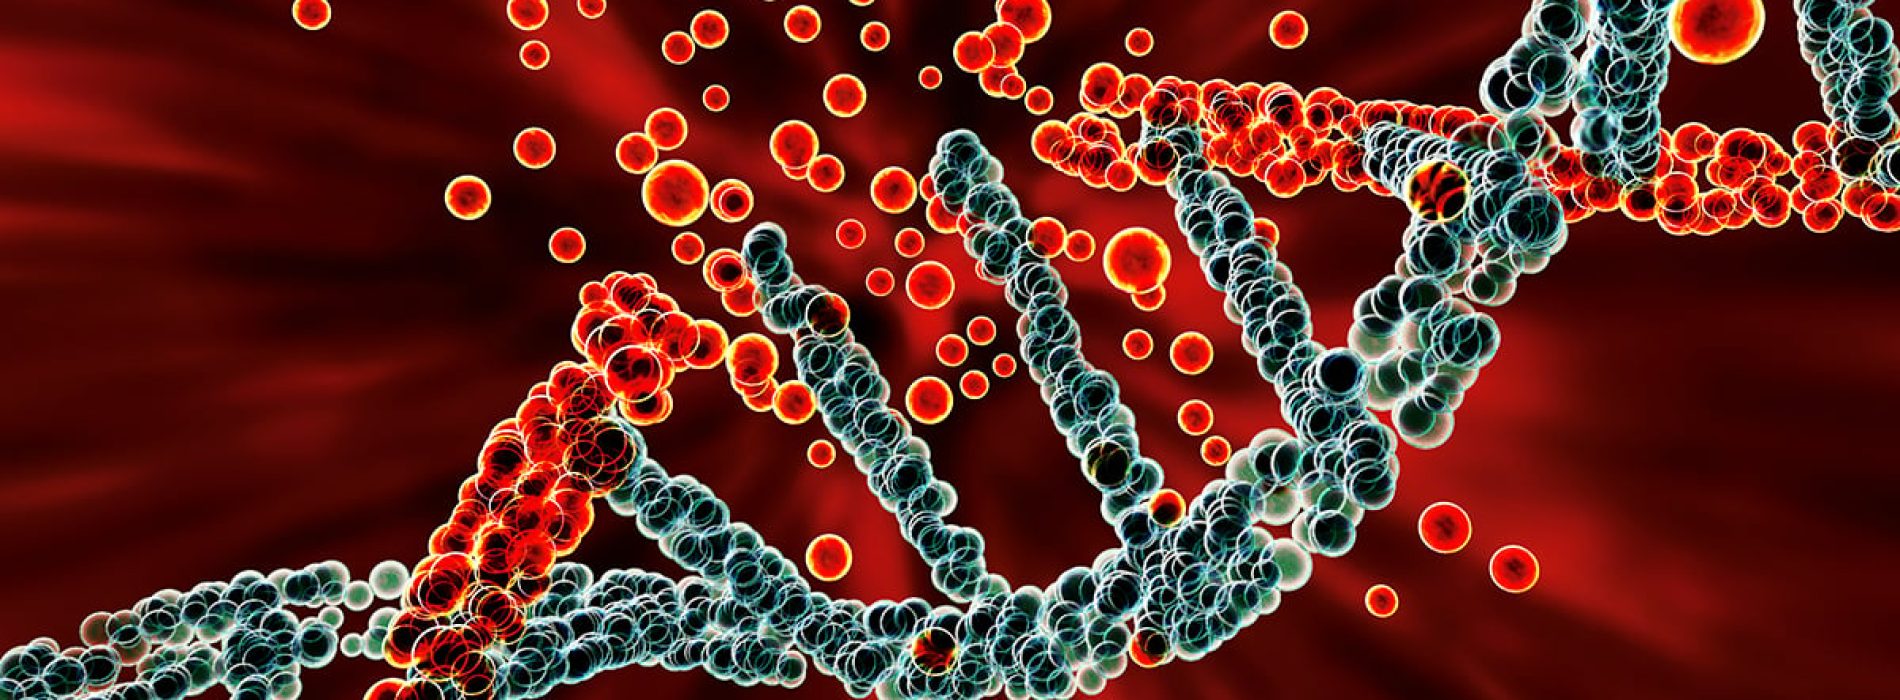 DNA-reparatie beschadigd door blootstelling aan kankerverwekkende huishoudelijke producten